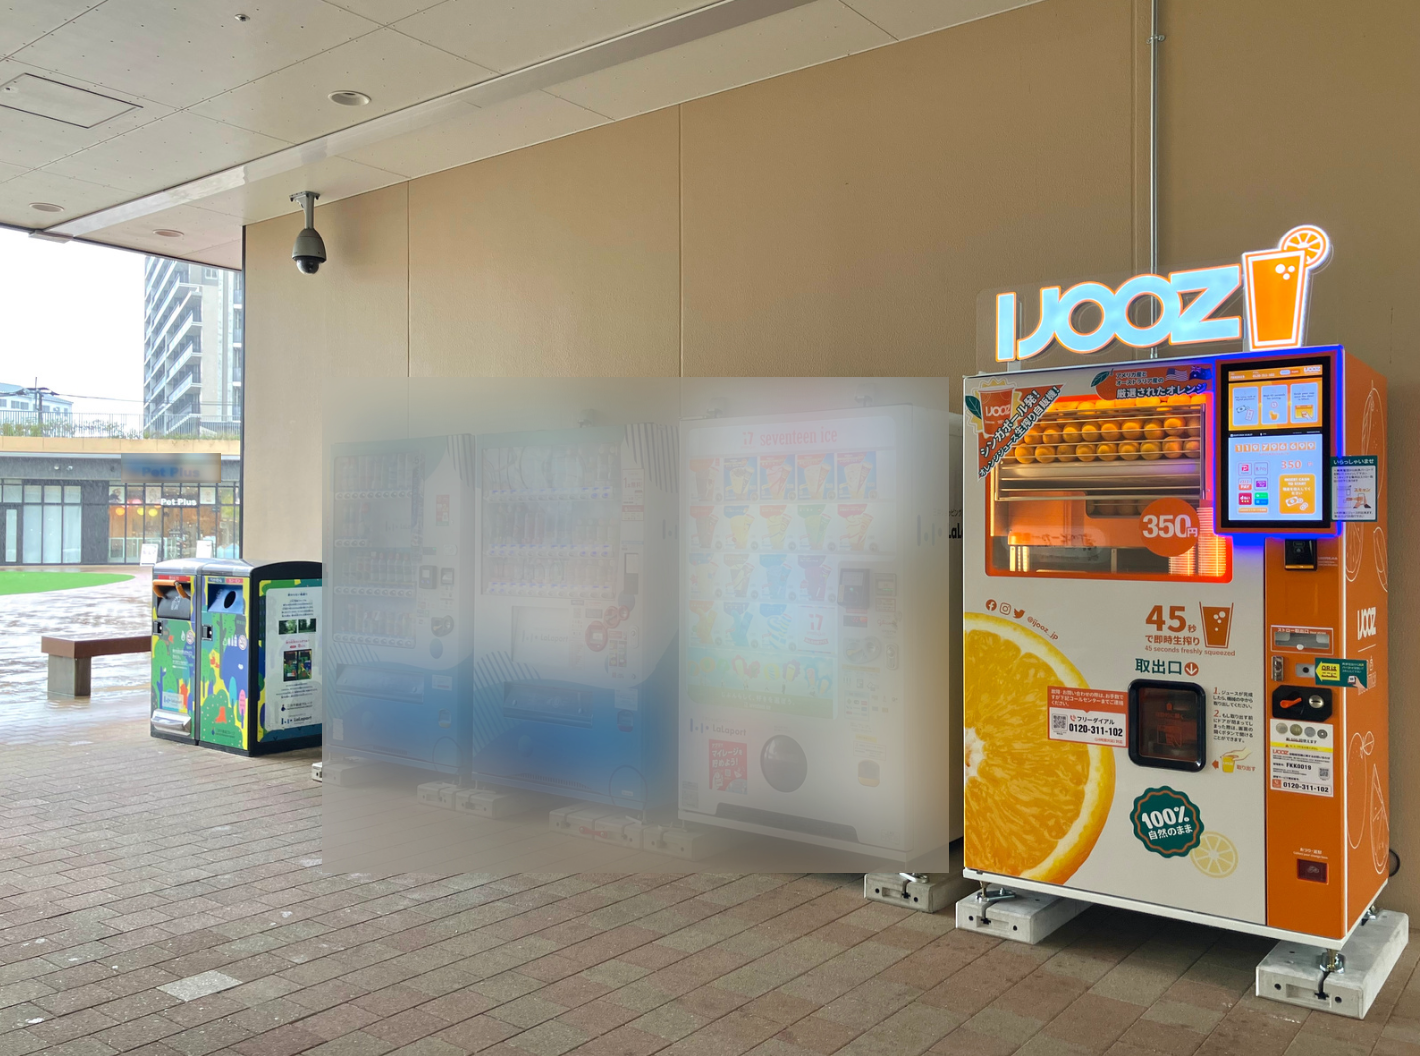 三井ショッピングパーク ららぽーと福岡1Fオーバルパーク付近に設置された350円生搾りオレンジジュース自販機IJOOZ